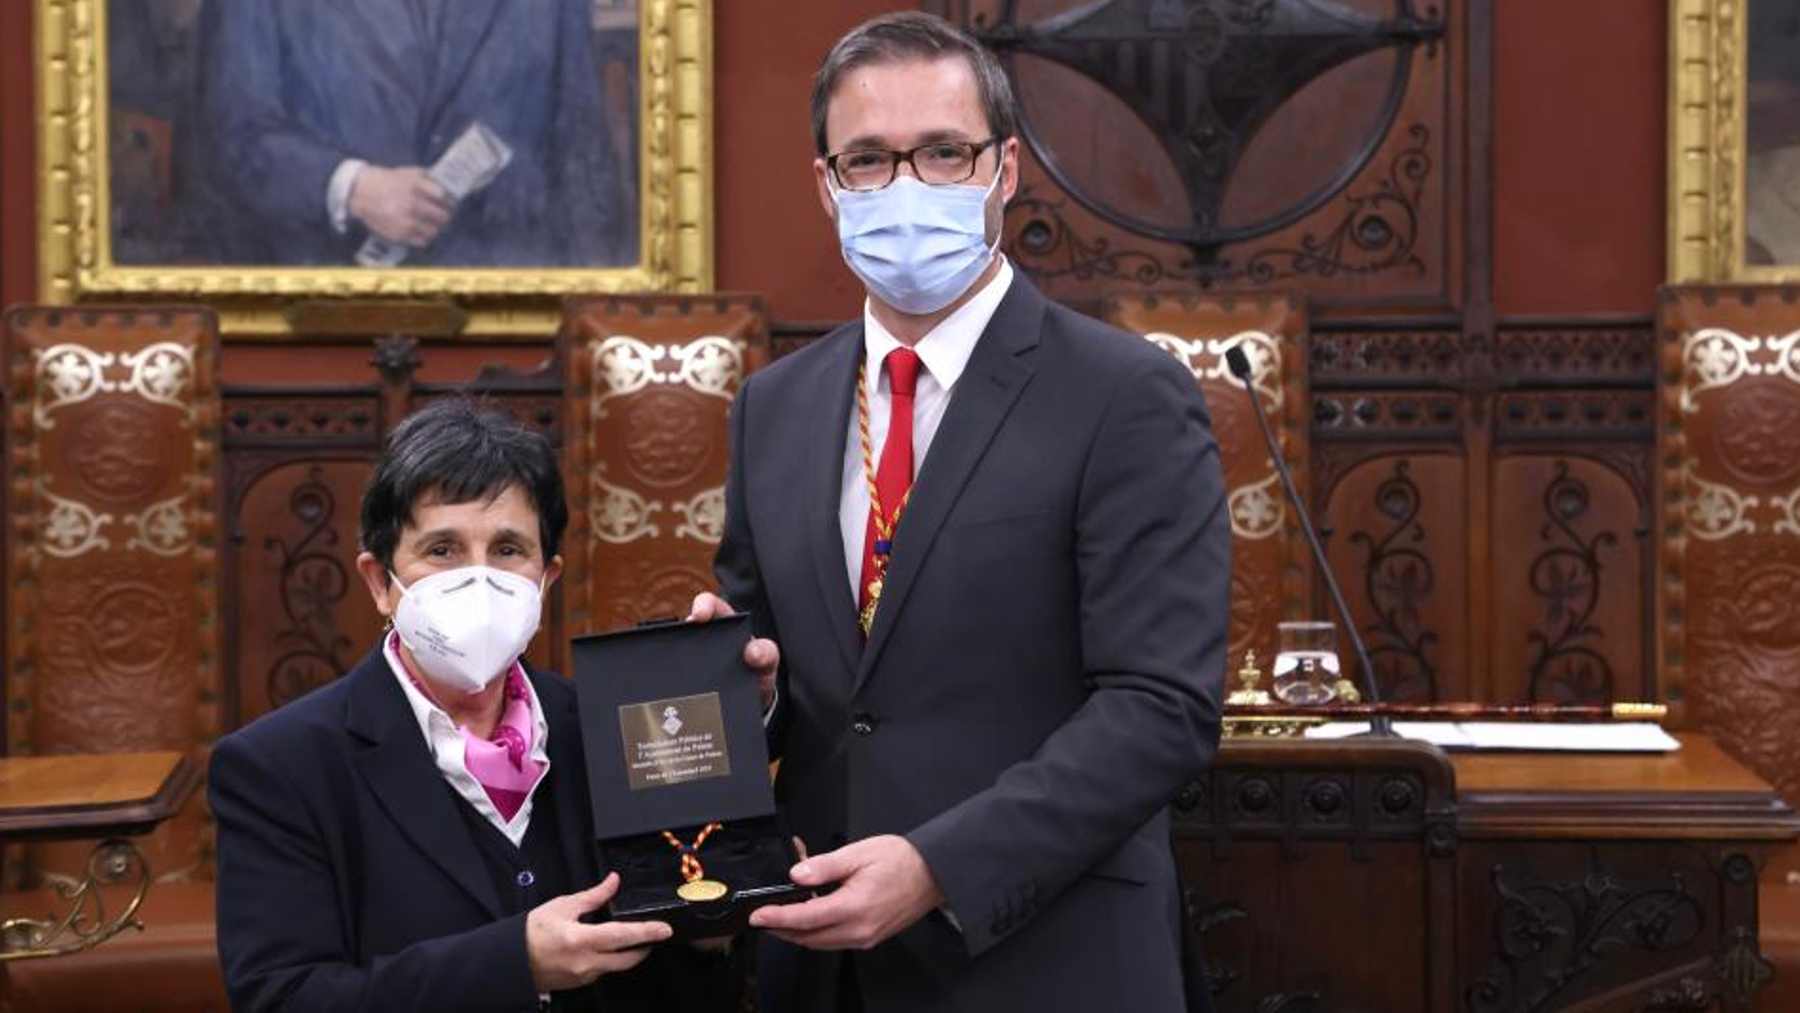 El alcalde de Palma, José Hila, hace entrega de la Medalla de Oro a la sub mayordoma del Consistorio, la sub mayordoma del Ayuntamiento, Araceli Henares.